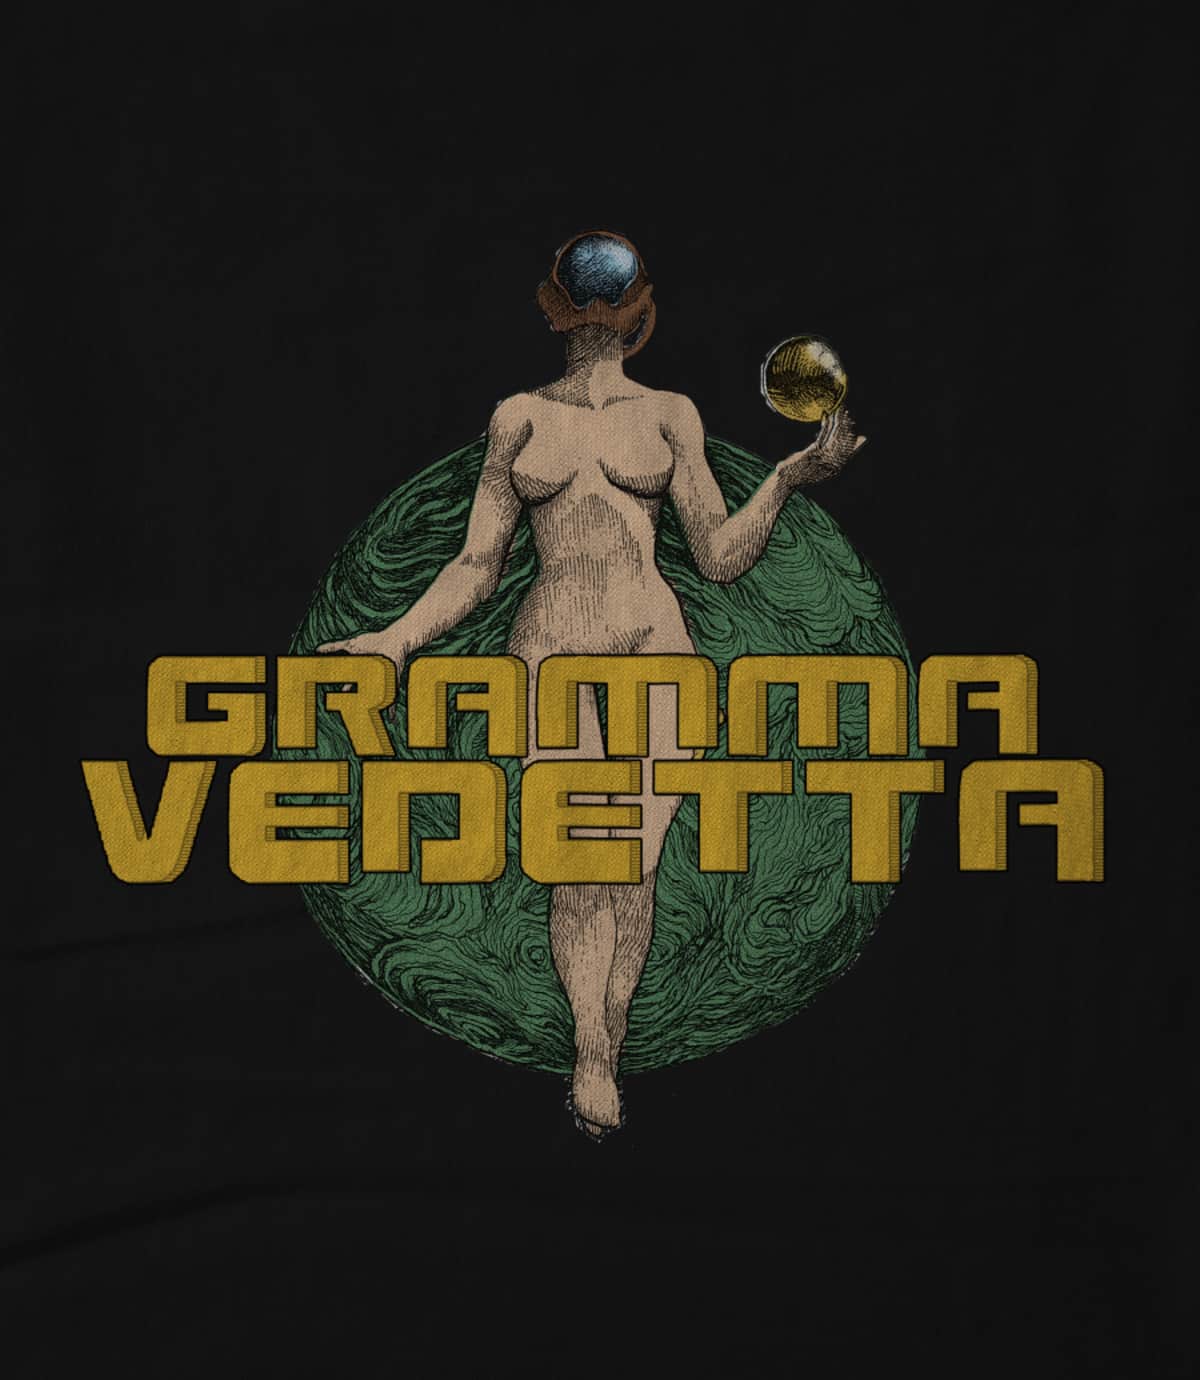 Gramma Vedetta